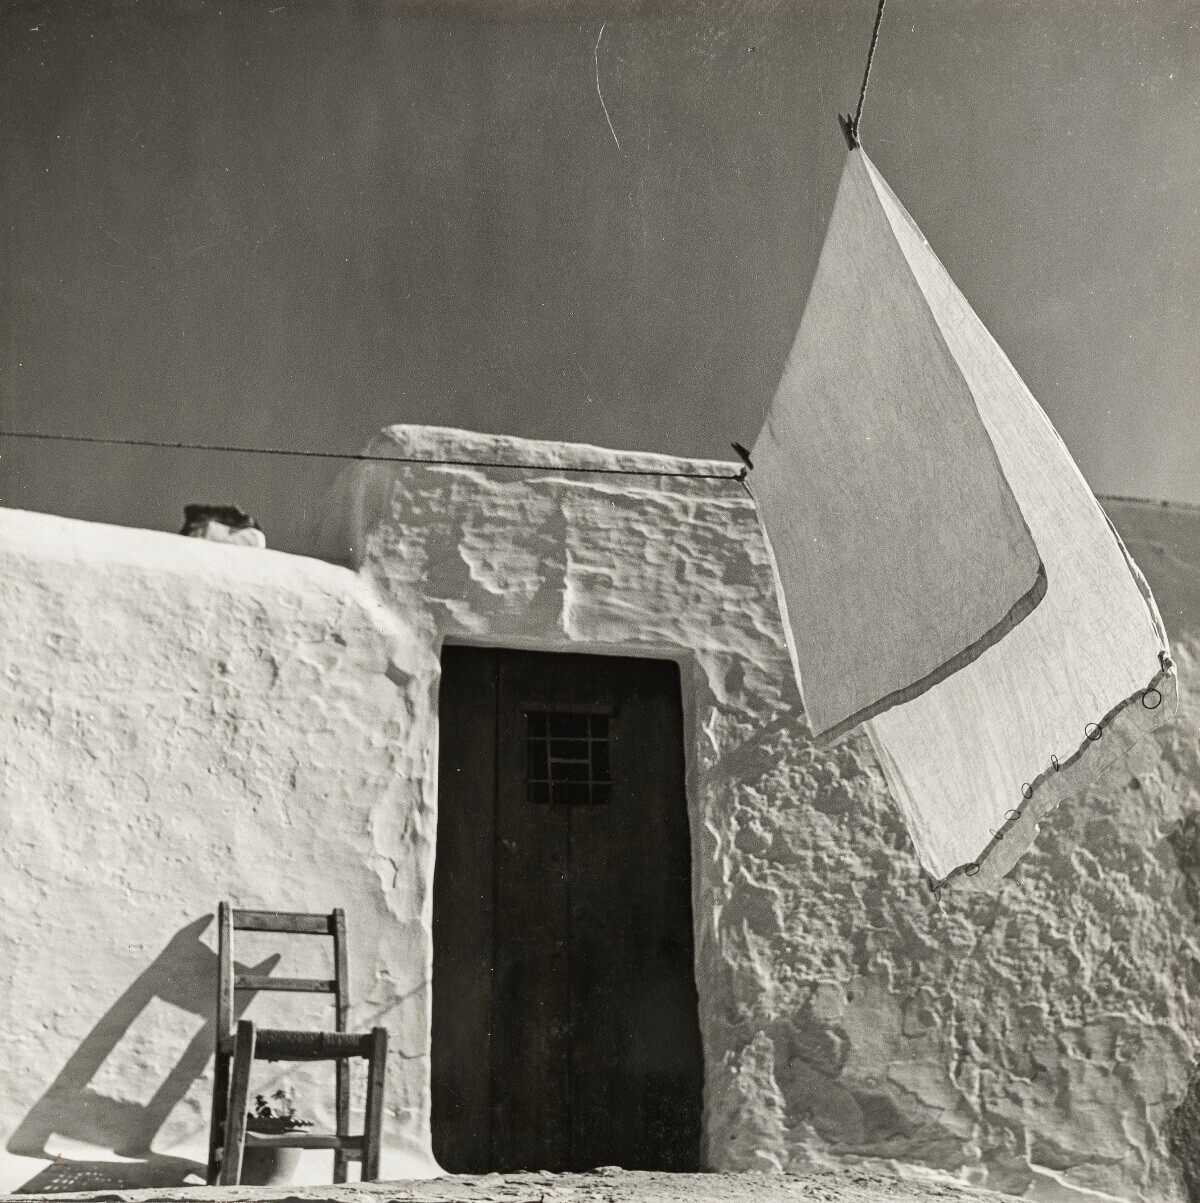 Ибица, 1954. Фотограф Ориоль Маспонс